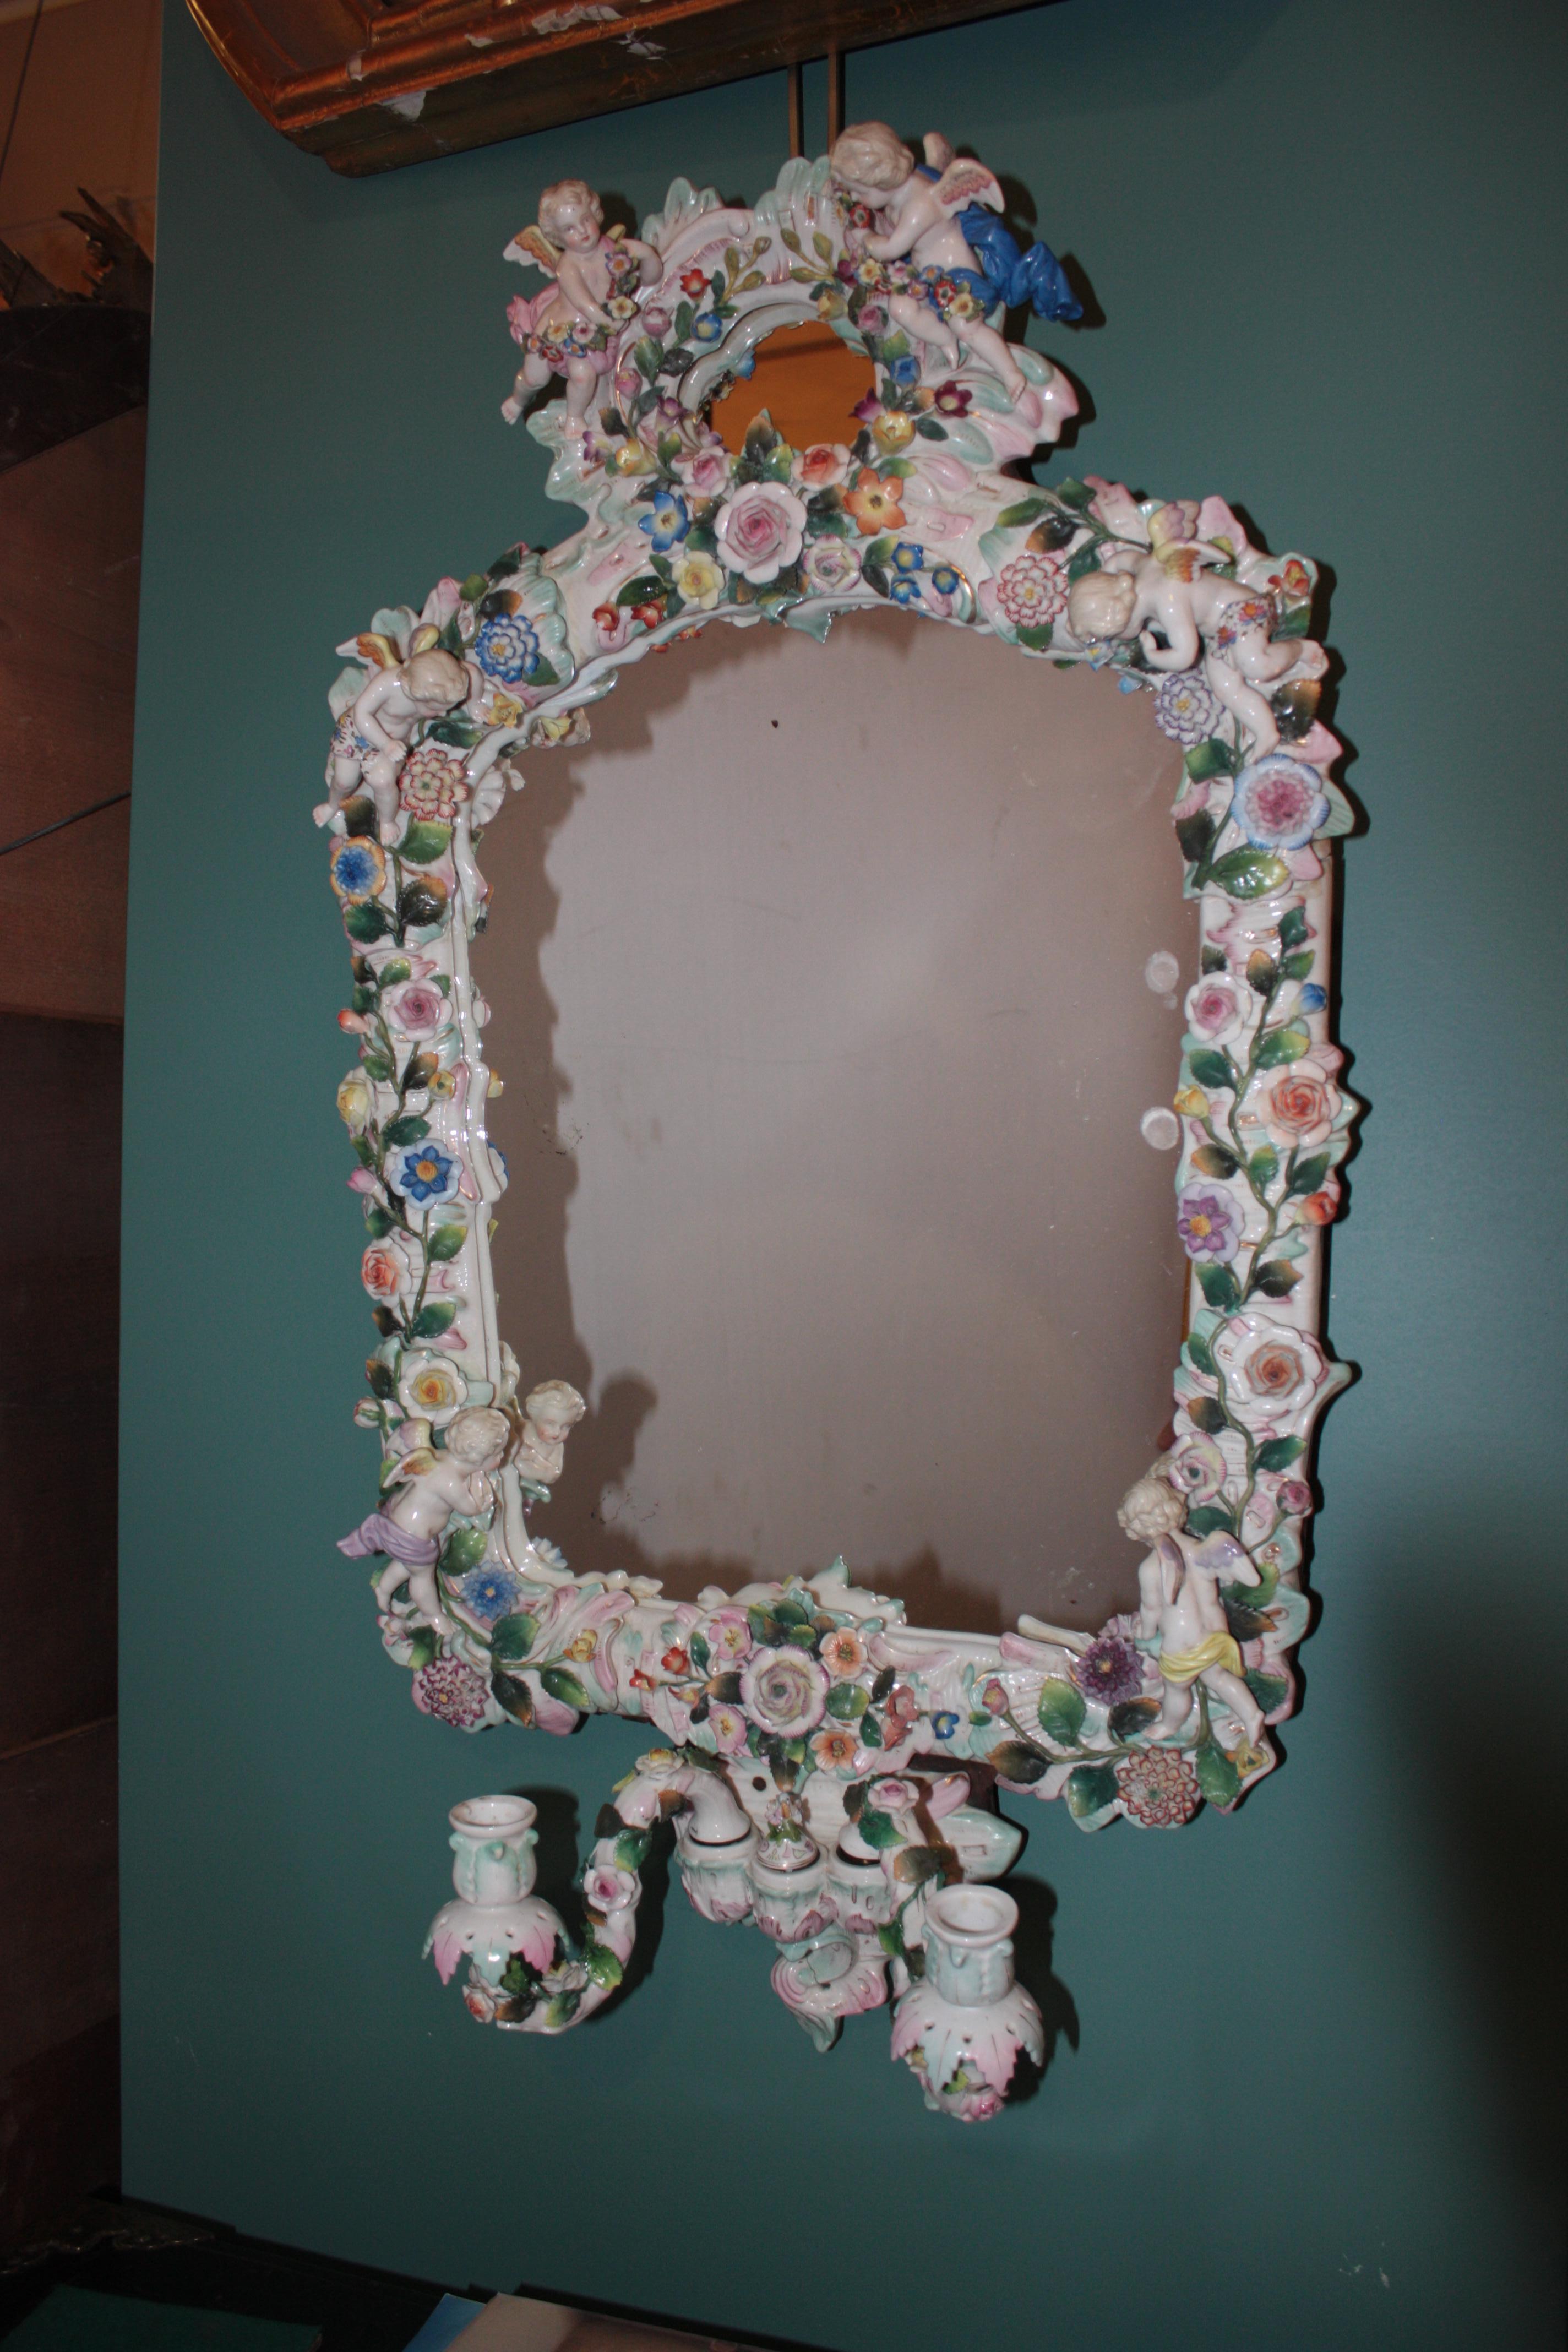 Dieser hübsche Girandole-Spiegel stammt aus dem späten 19. Jahrhundert, der Belle Époque zwischen dem französisch-preußischen Krieg und dem Ersten Weltkrieg. Europa war damals reich und blühte. Dieser Spiegel verkündet den Überschwang und das